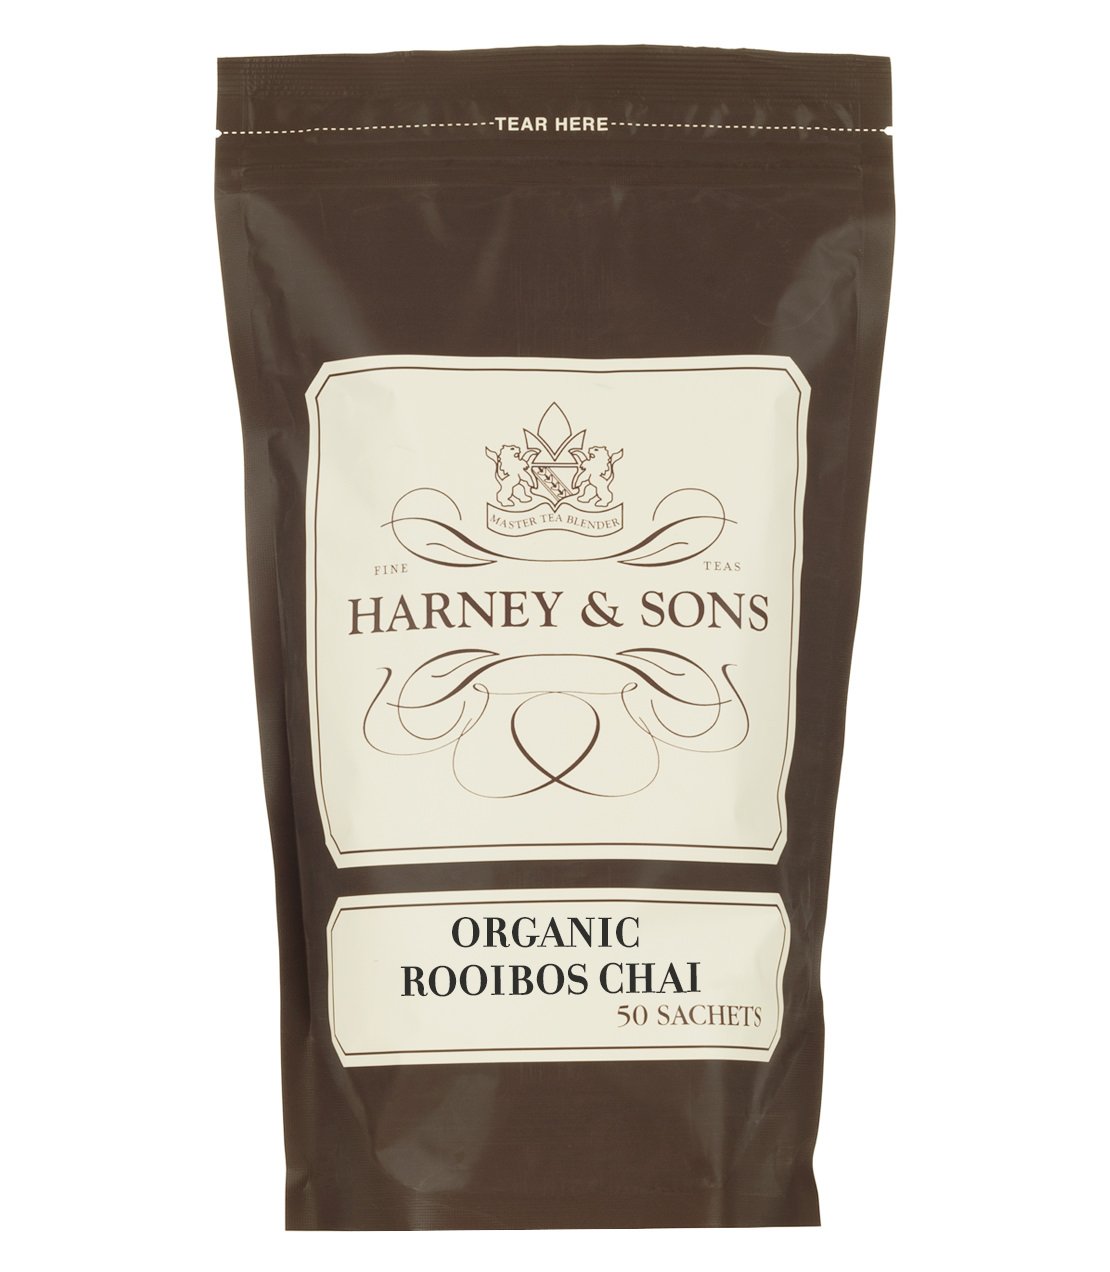 Organic Rooibos Chai, Bag of 50 Sachets - Sachets Bag of 50 Sachets - Harney & Sons Fine Teas